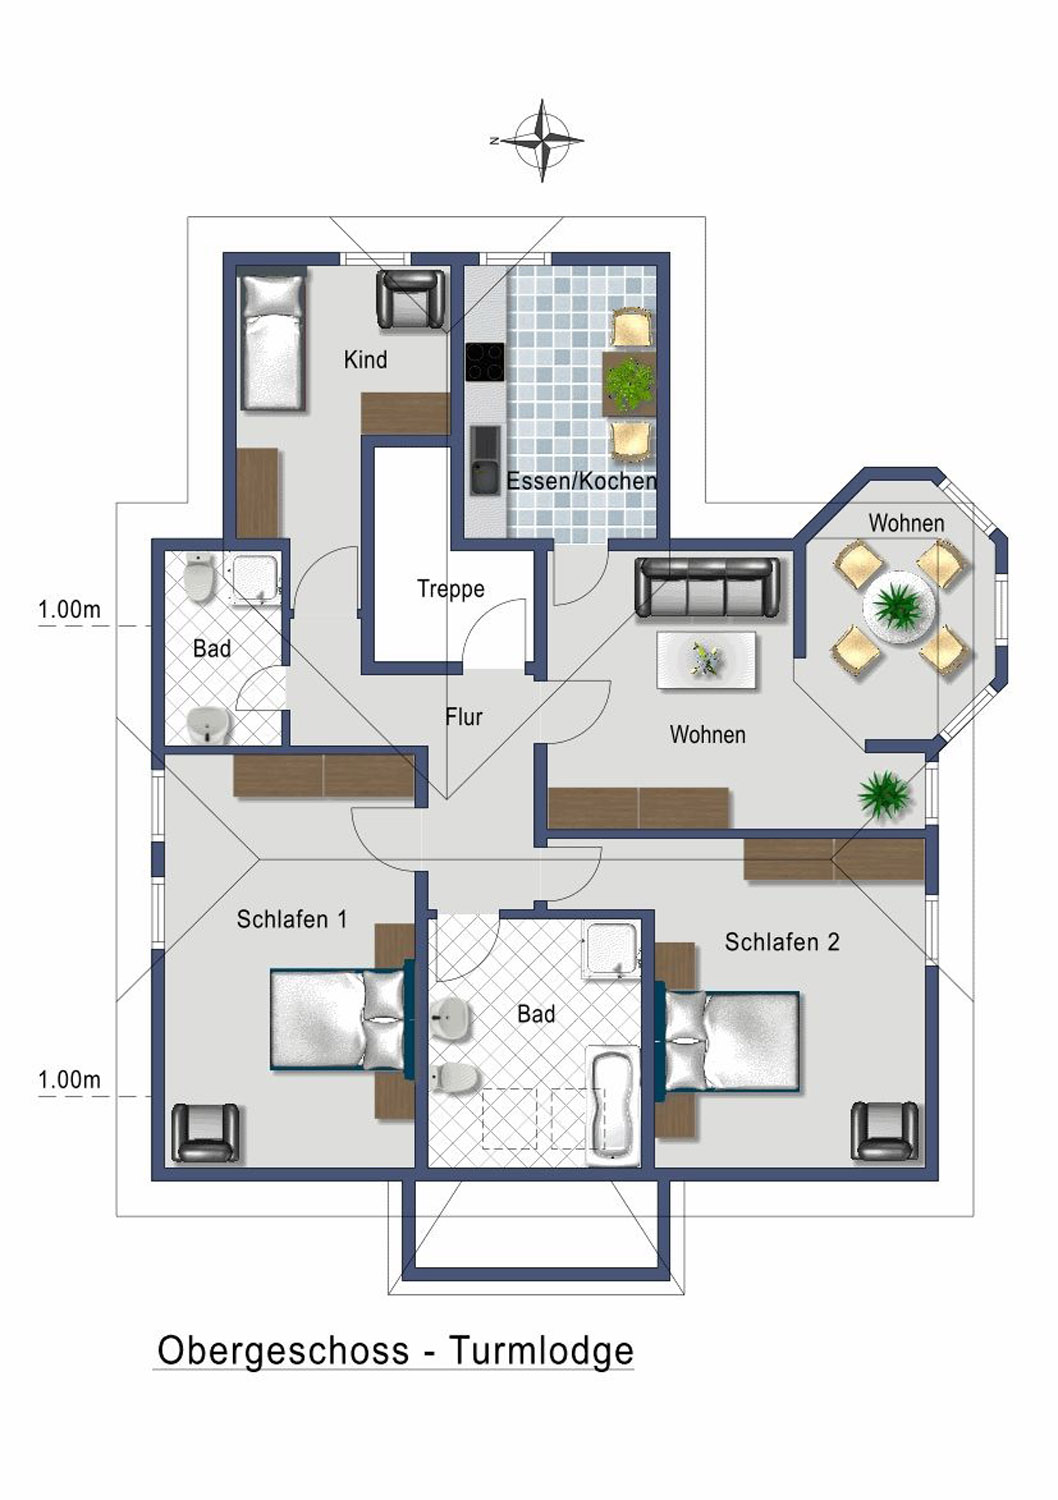 Grundriss der Ferienwohnung im 1. OG mit 3 Schlafzimmern, 2 Baedern, Wohn- und Essbereich und Kueche